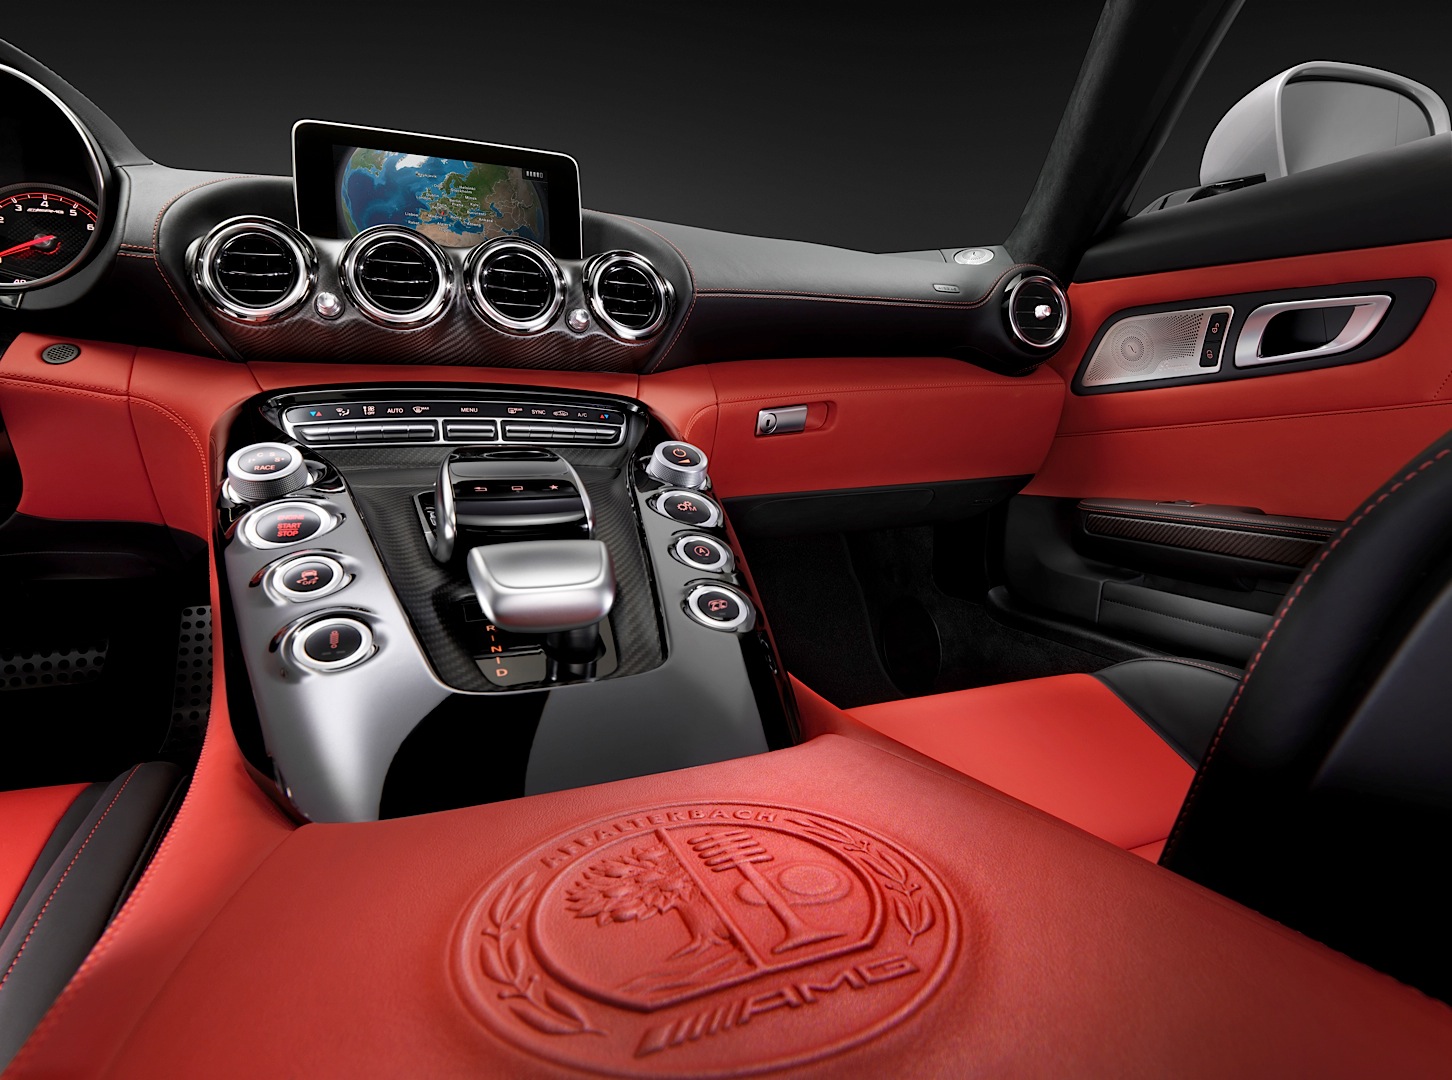 Mercedes Amg Gt Vs Porsche 911 Vs Jaguar F Type Interior